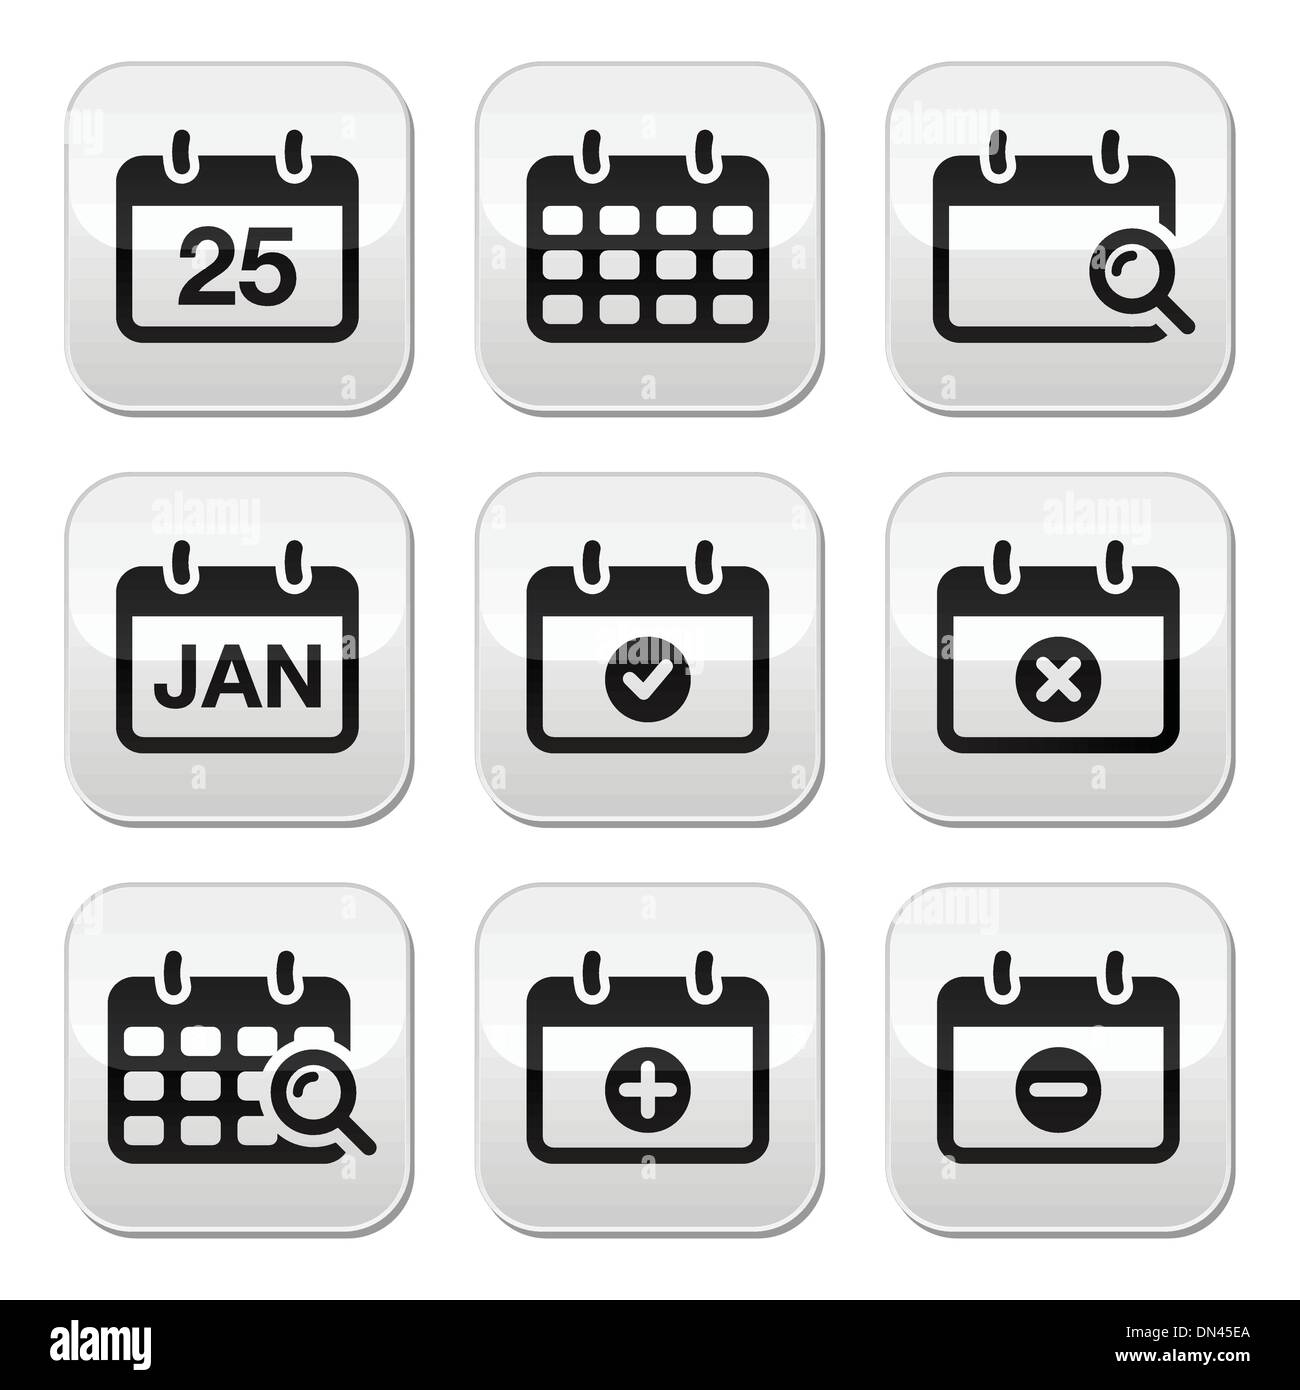 Calendar date vector buttons set Stock Vector